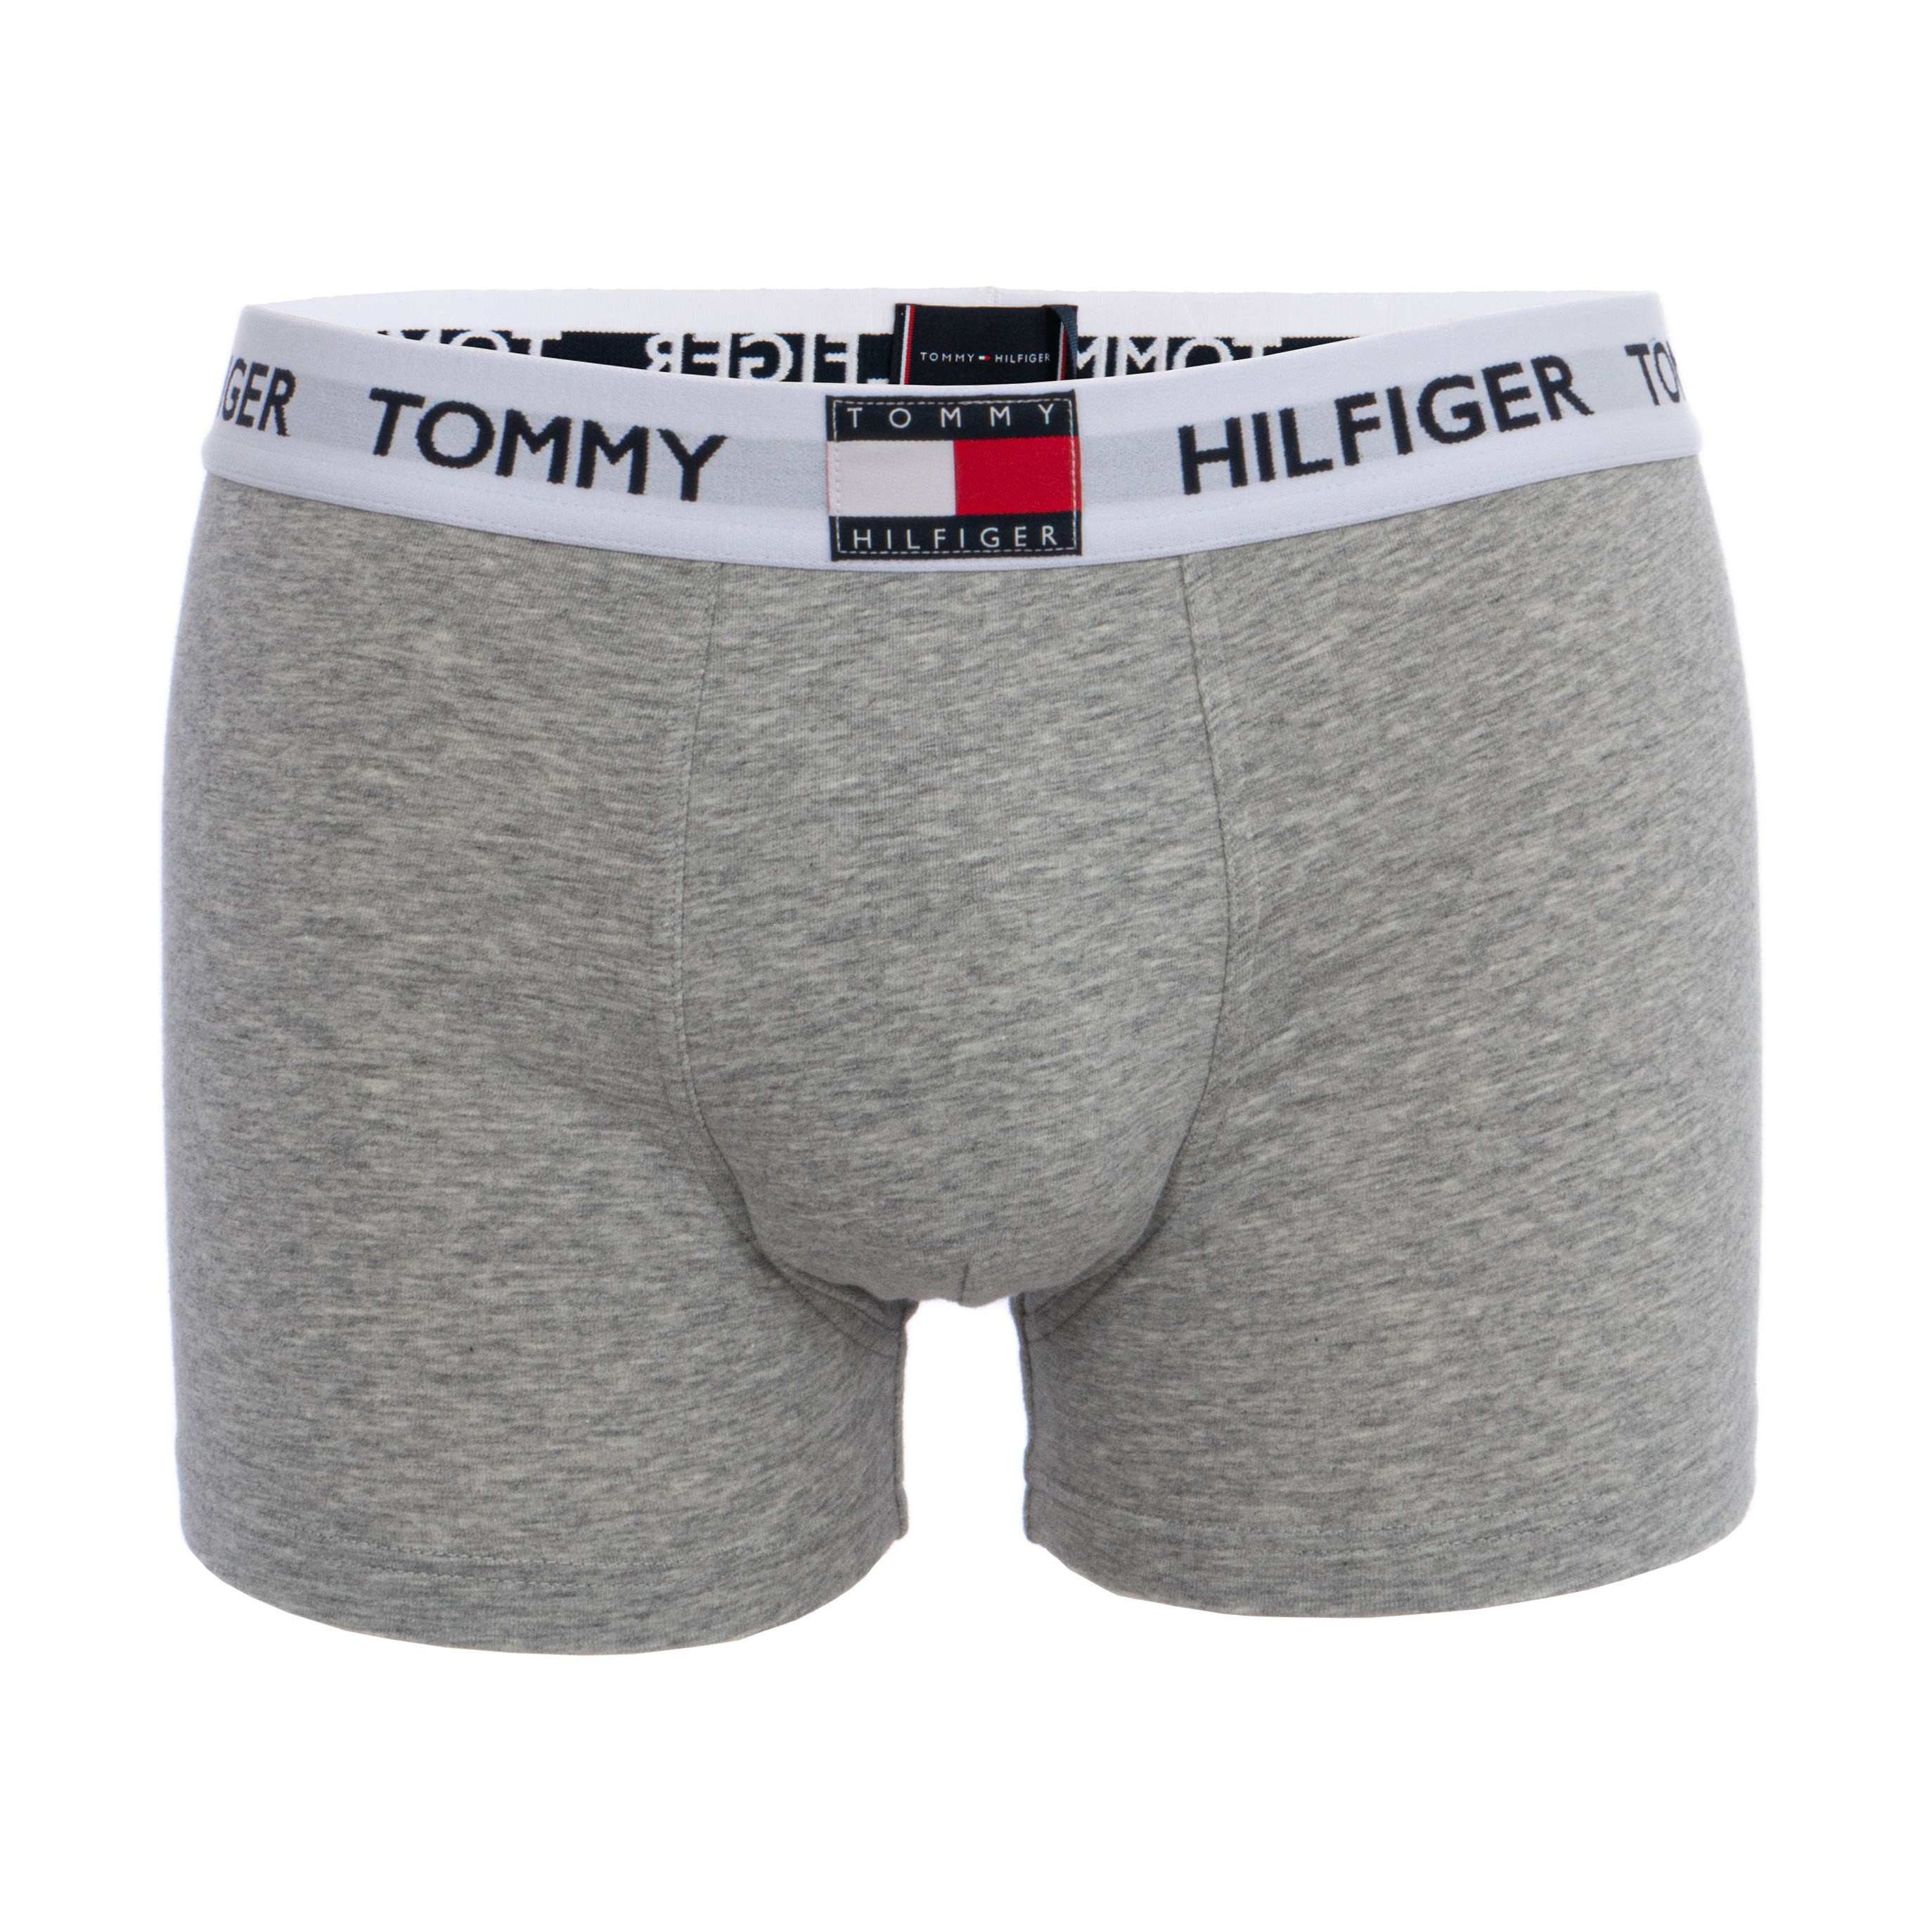 tommy tom underwear